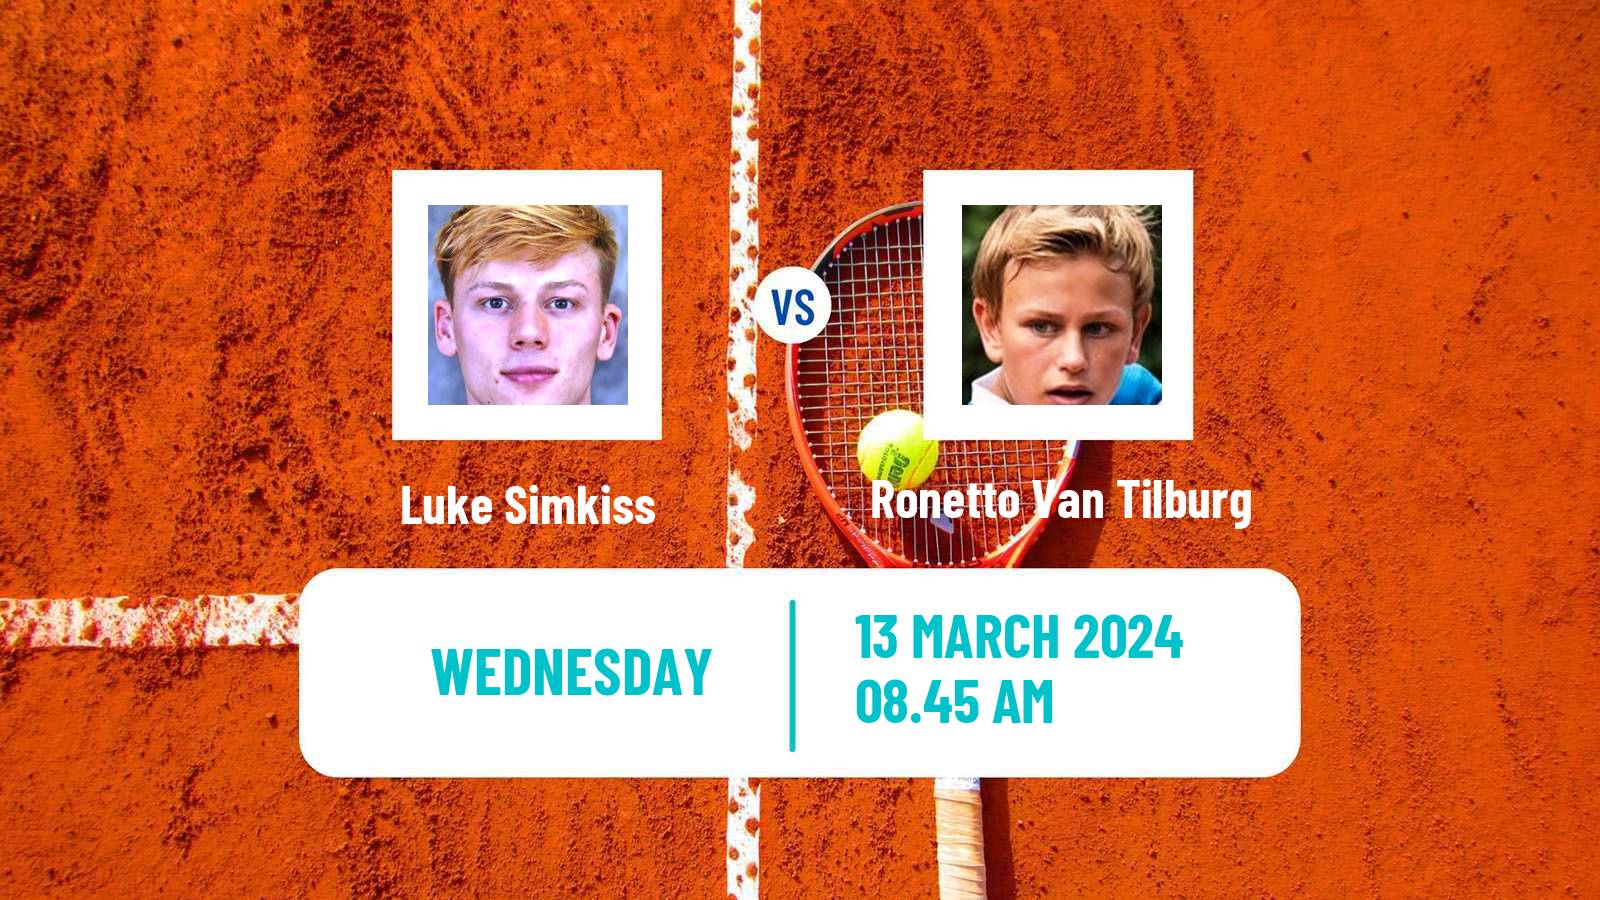 Tennis ITF M15 Les Franqueses Del Valles Men Luke Simkiss - Ronetto Van Tilburg